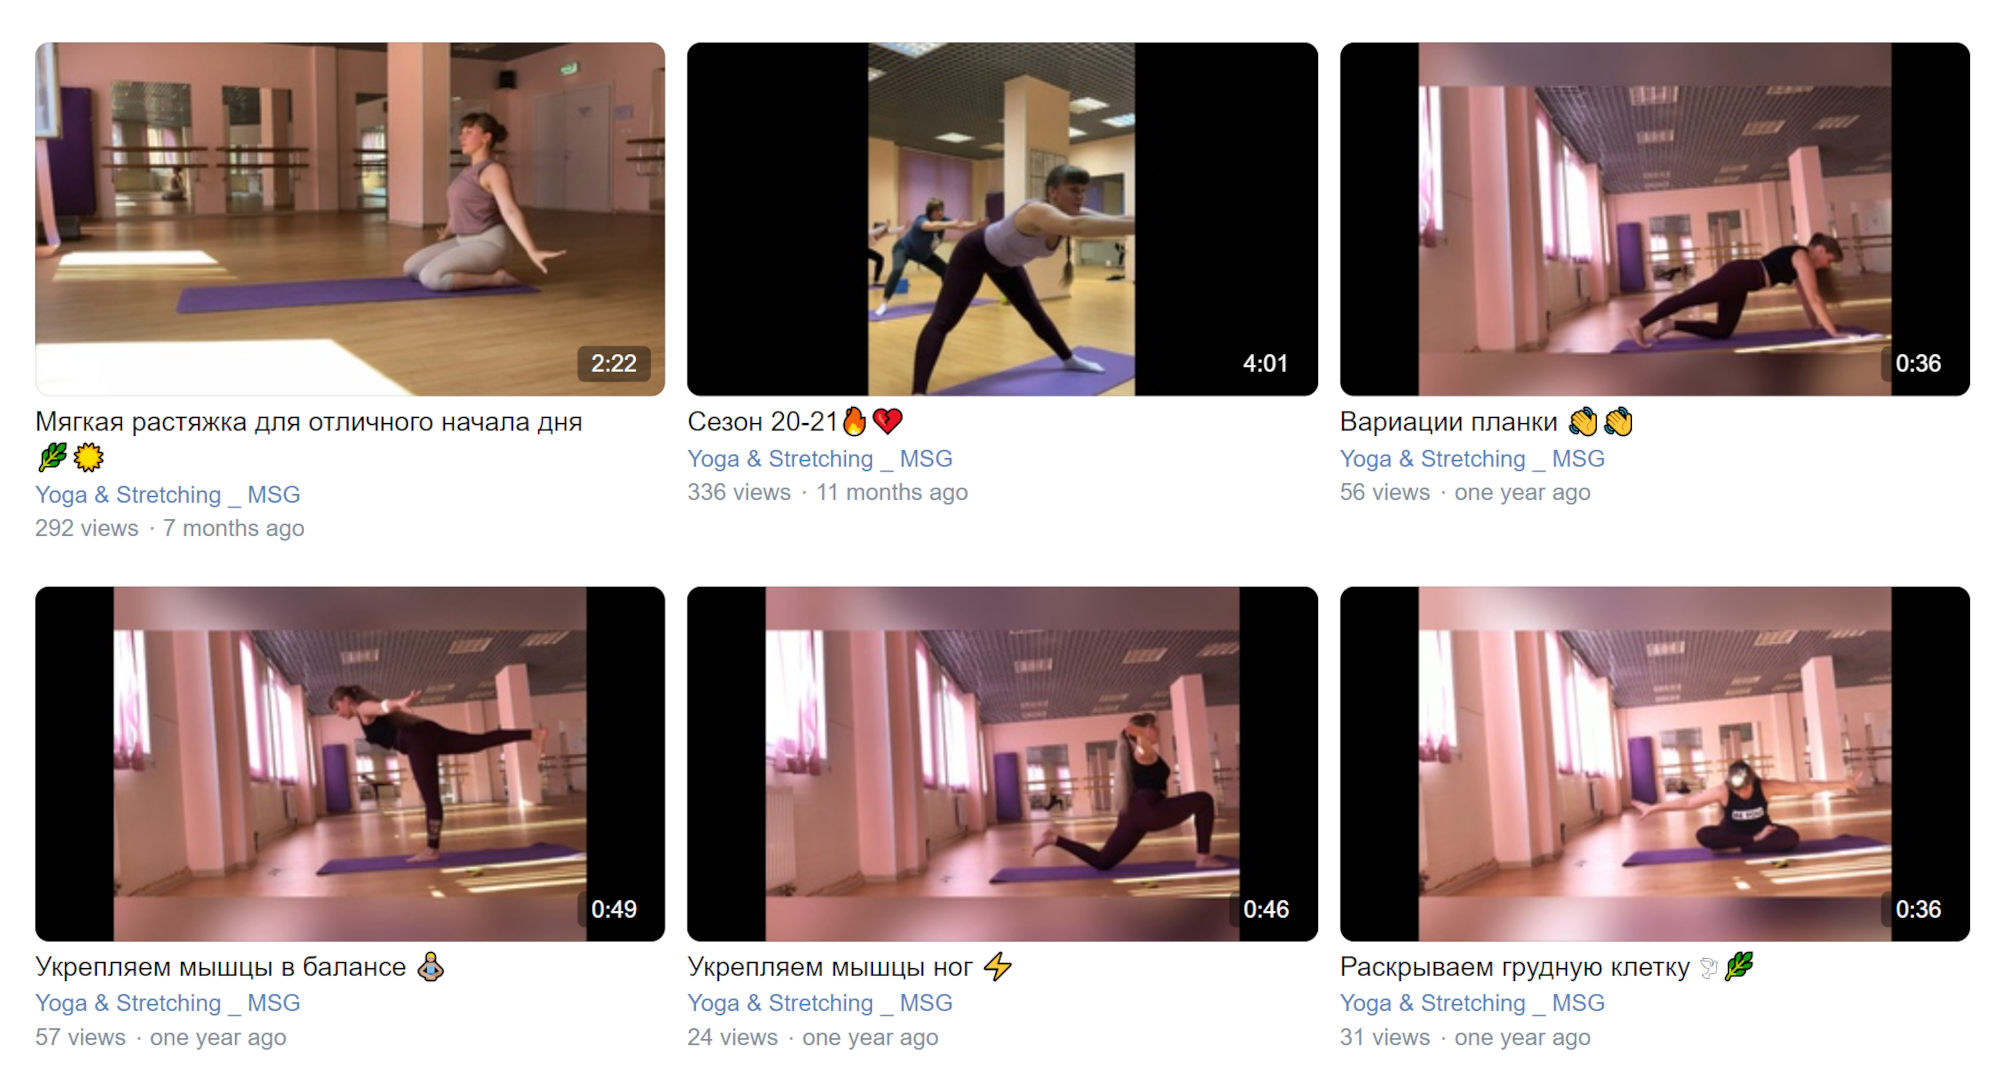 Для своей группы во «Вконтакте» я снимаю и выкладываю короткие видео — каждый может позаниматься самостоятельно. Источник: сообщество «Yoga & Stretching _ MSG» во «Вконтакте»